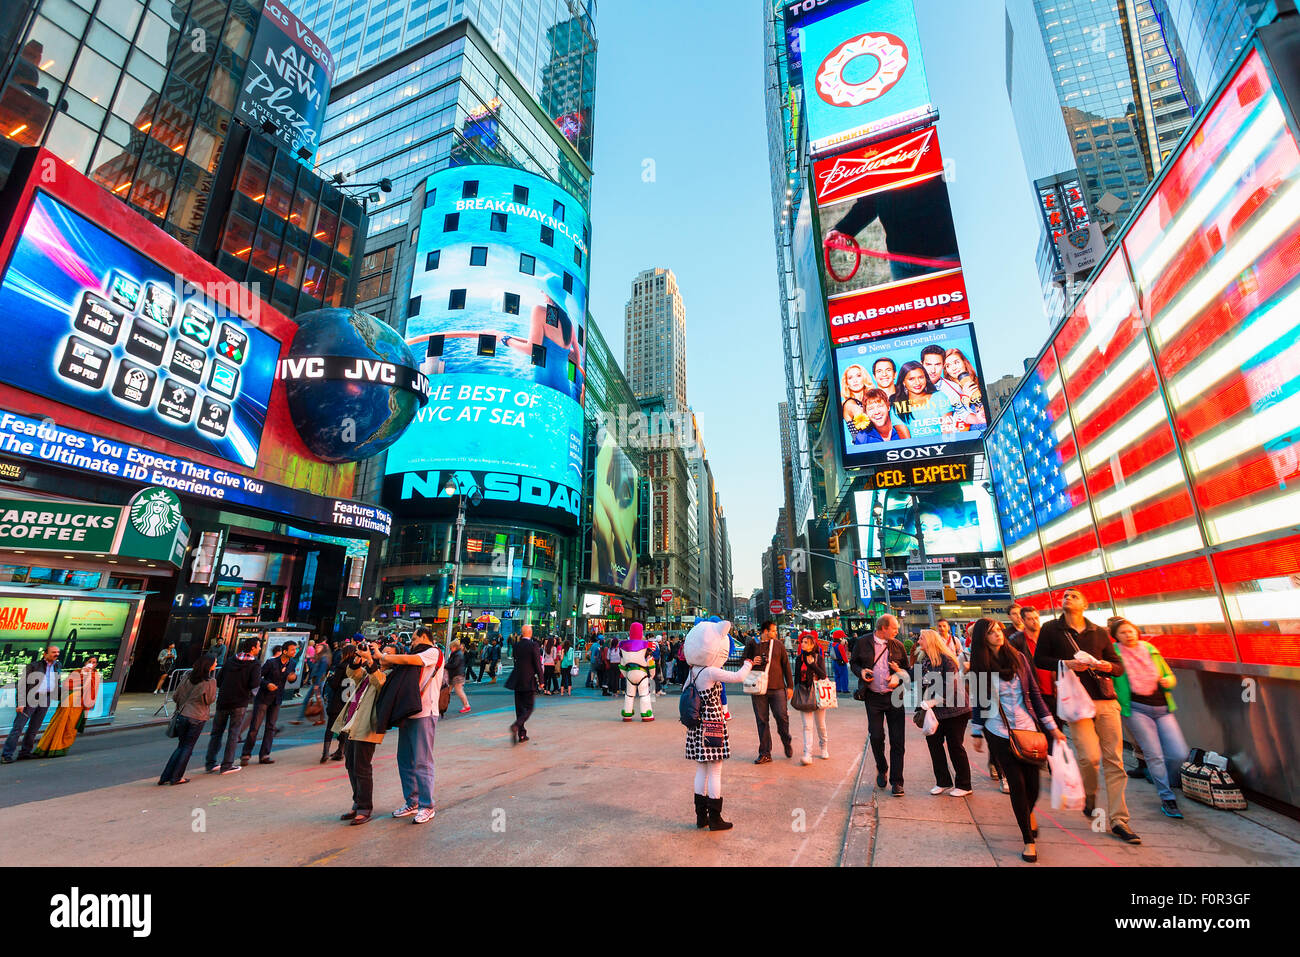 La ville de New York, Times Square by night Banque D'Images